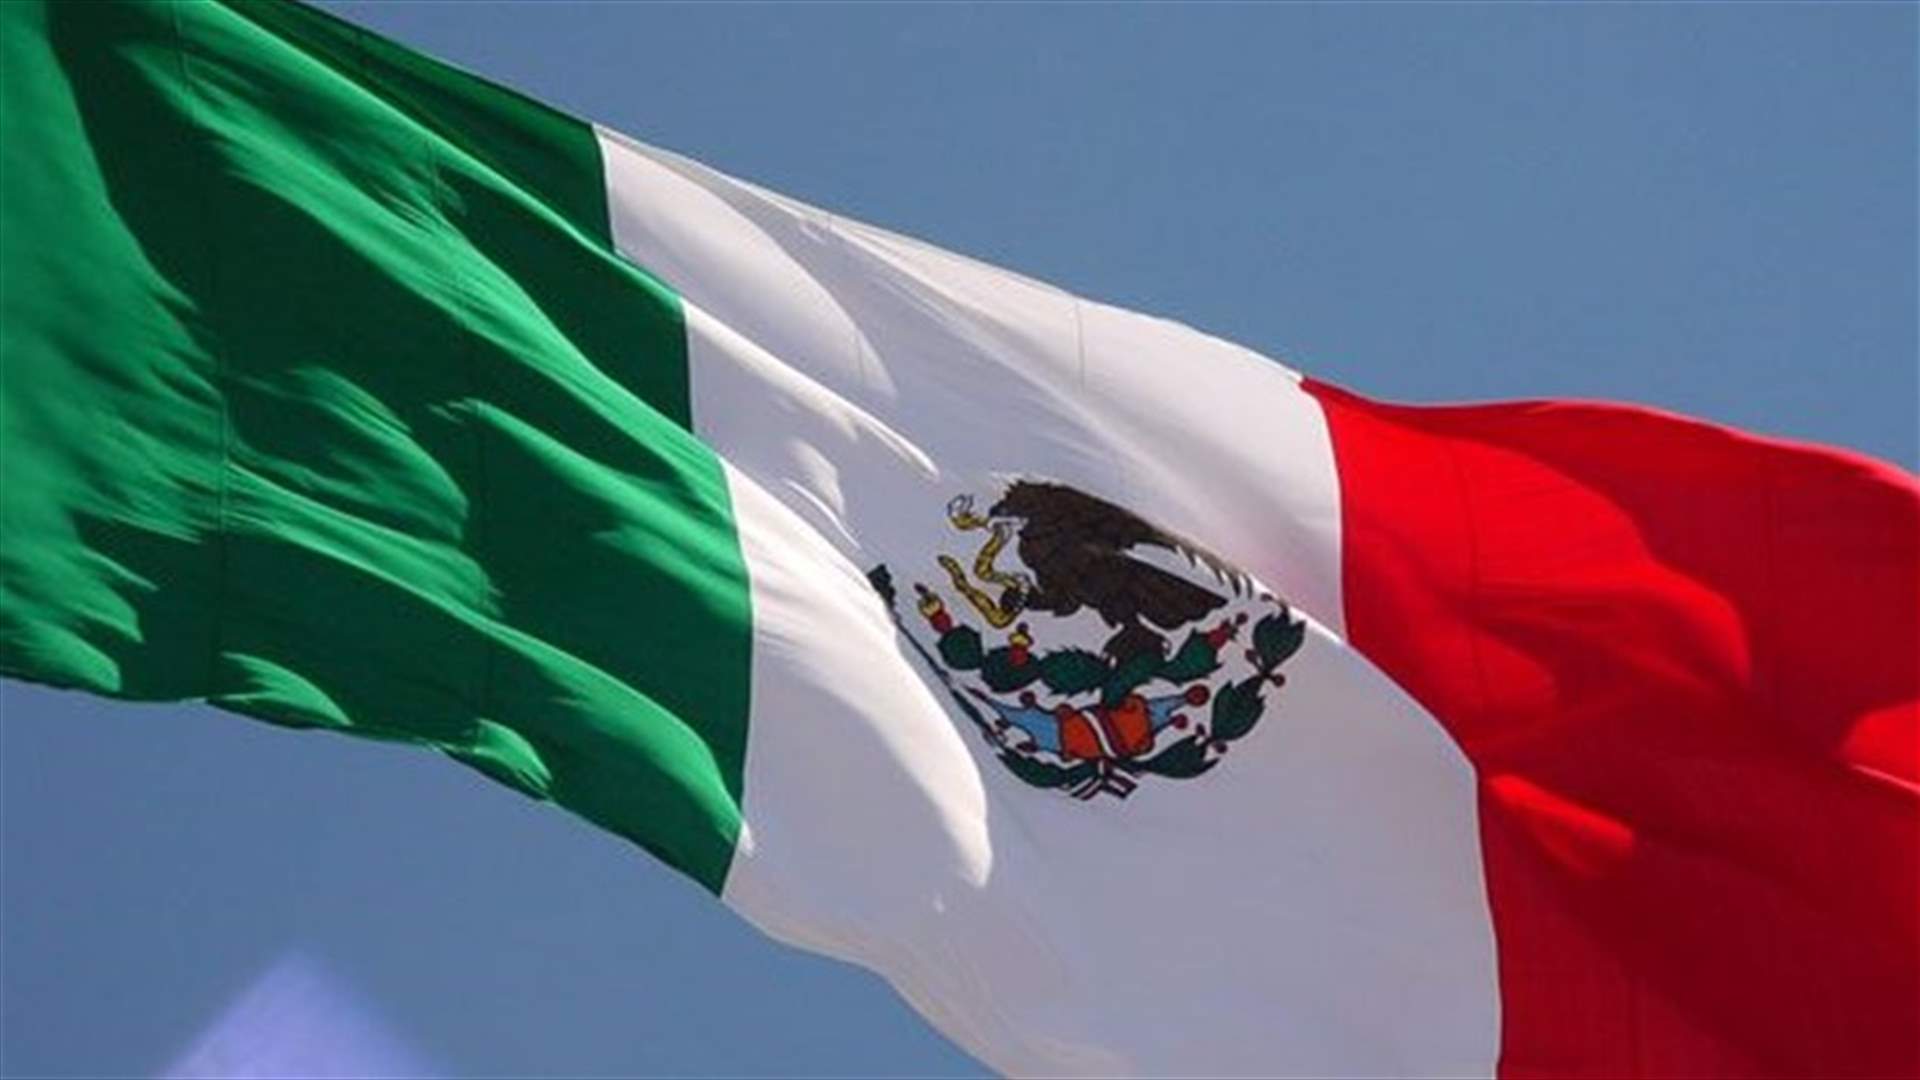 اشتباكات مسلحة واشعال نار في سيارات في رينوسا المكسيكية